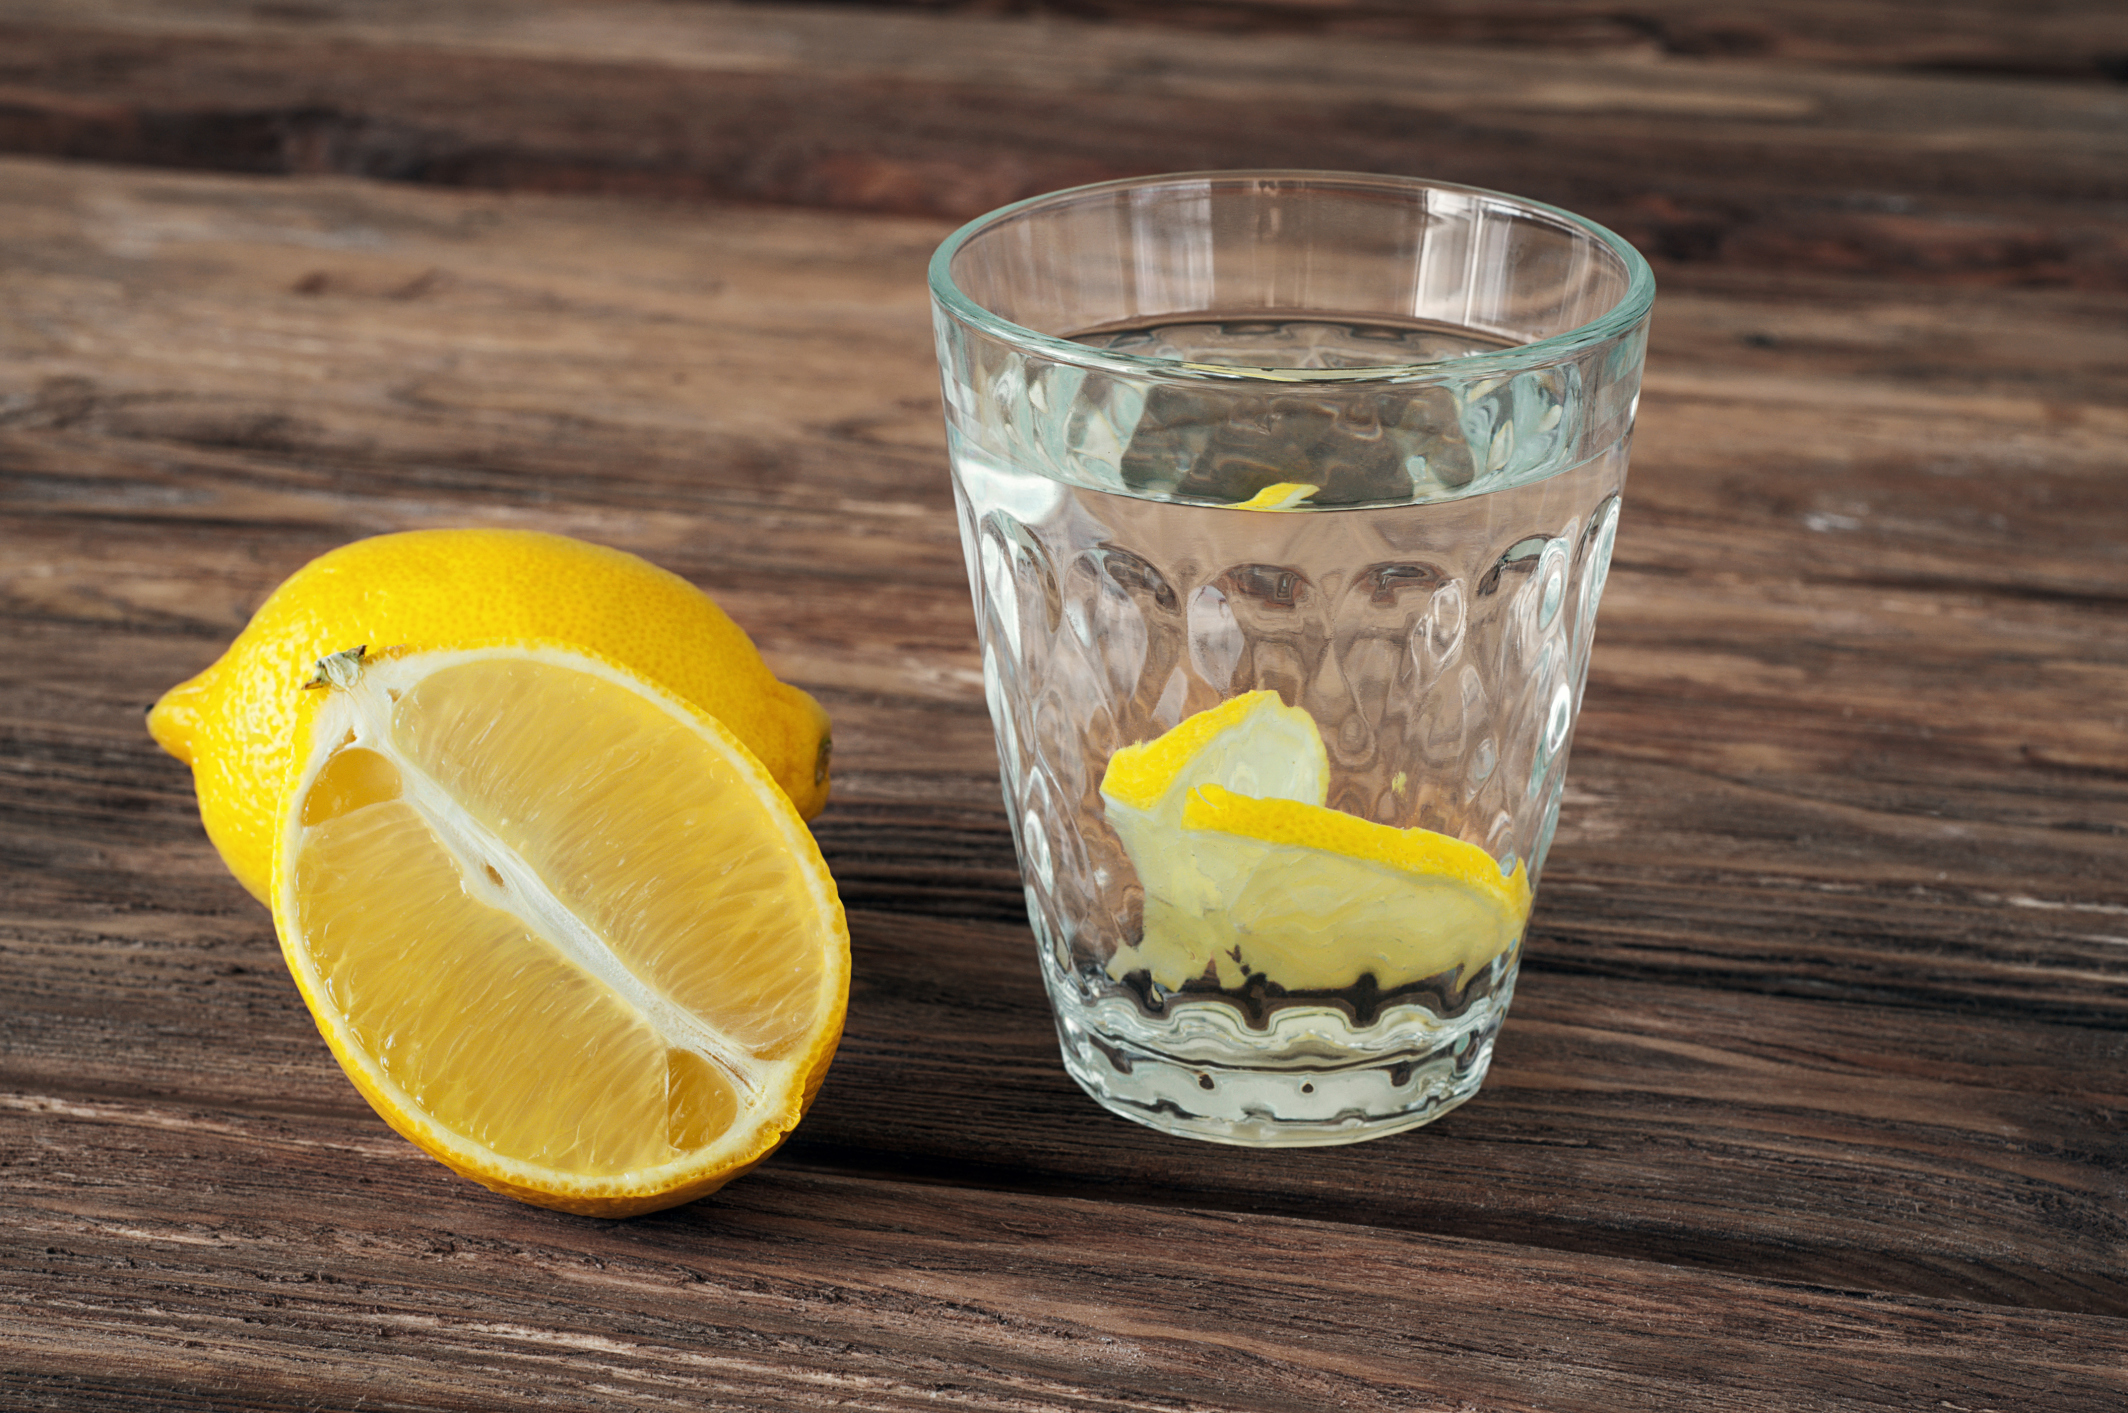 فوائد شرب الليمون مع الماء كالتخفيف من الصداع والتعب مع الدكتور بيرج